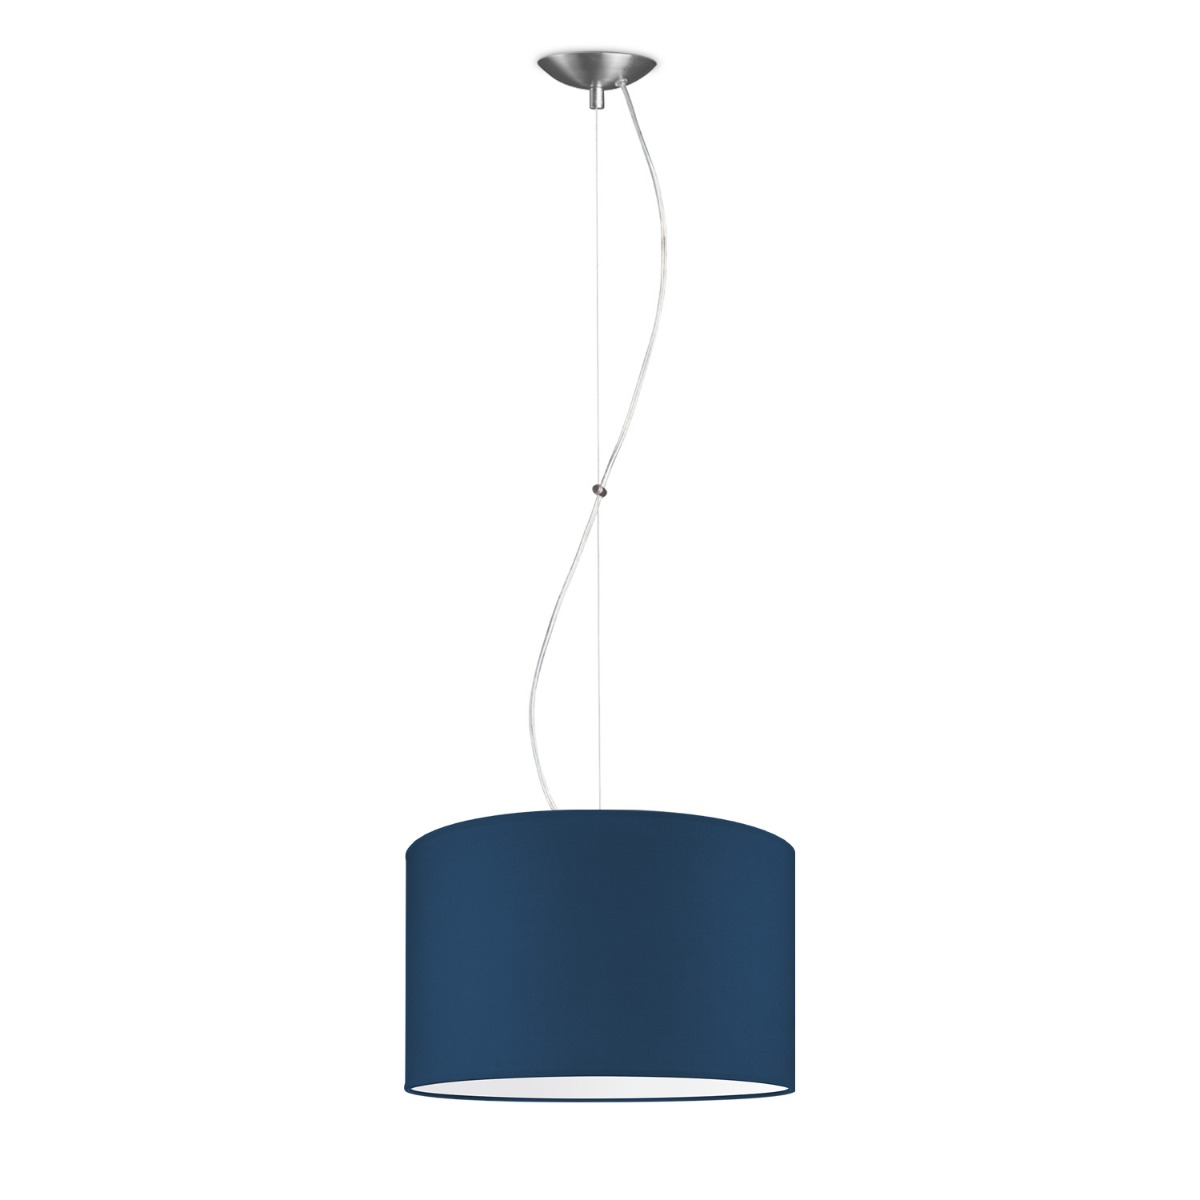 hanglamp basic deluxe bling Ø 35 cm - blauw